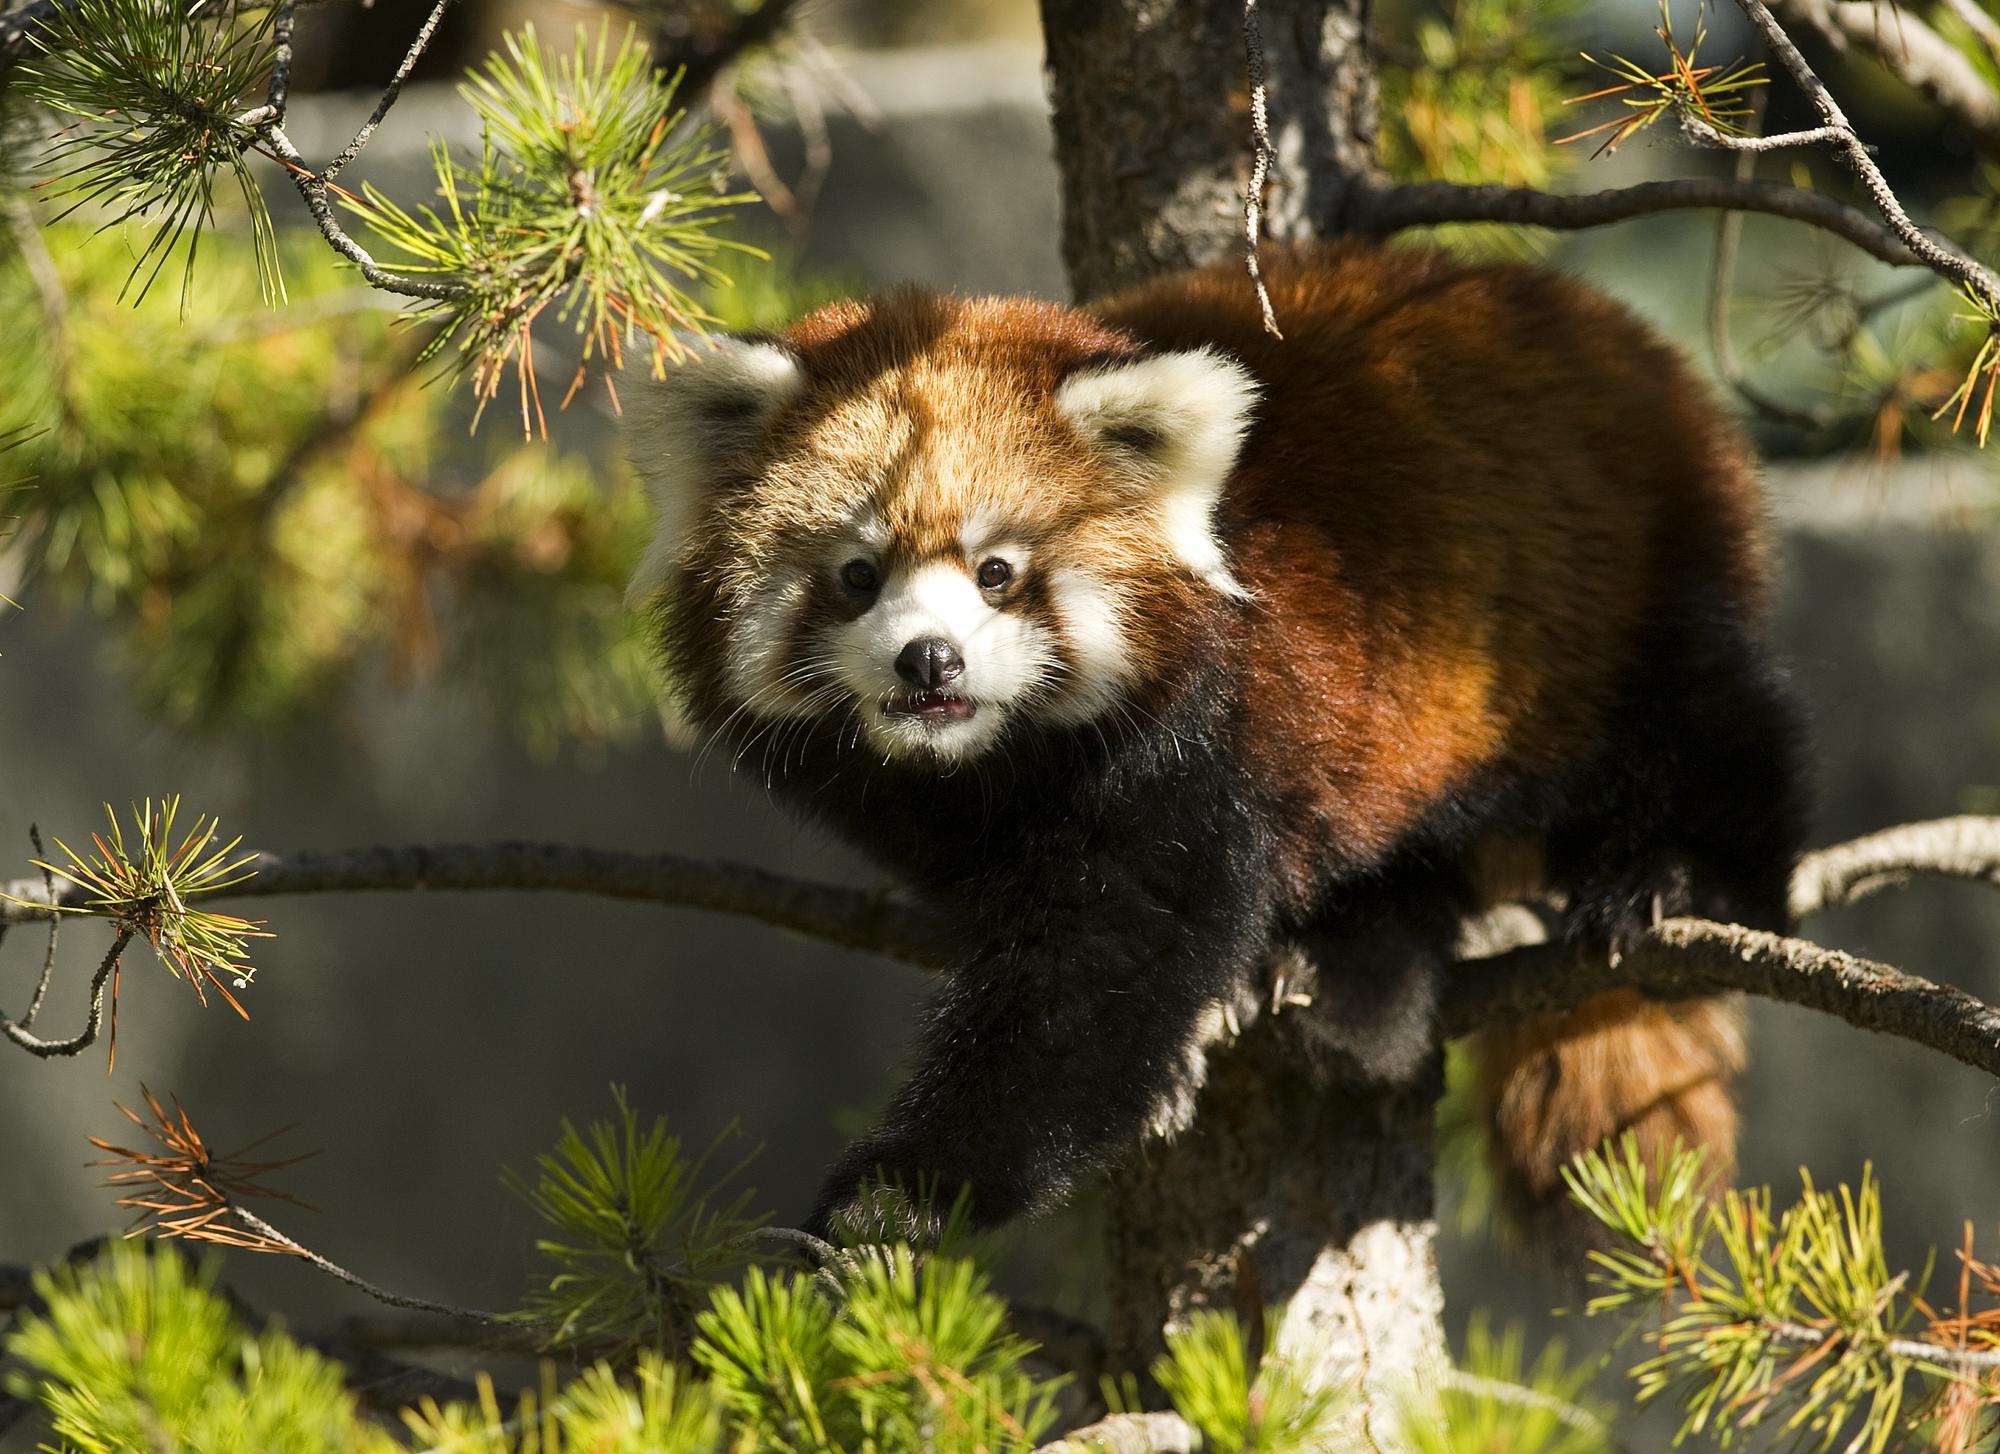 Le nombre d'espèces menacées, comme le panda rouge, s'accroît dangereusement, selon les experts. [REUTERS - � Todd Korol / Reuters]